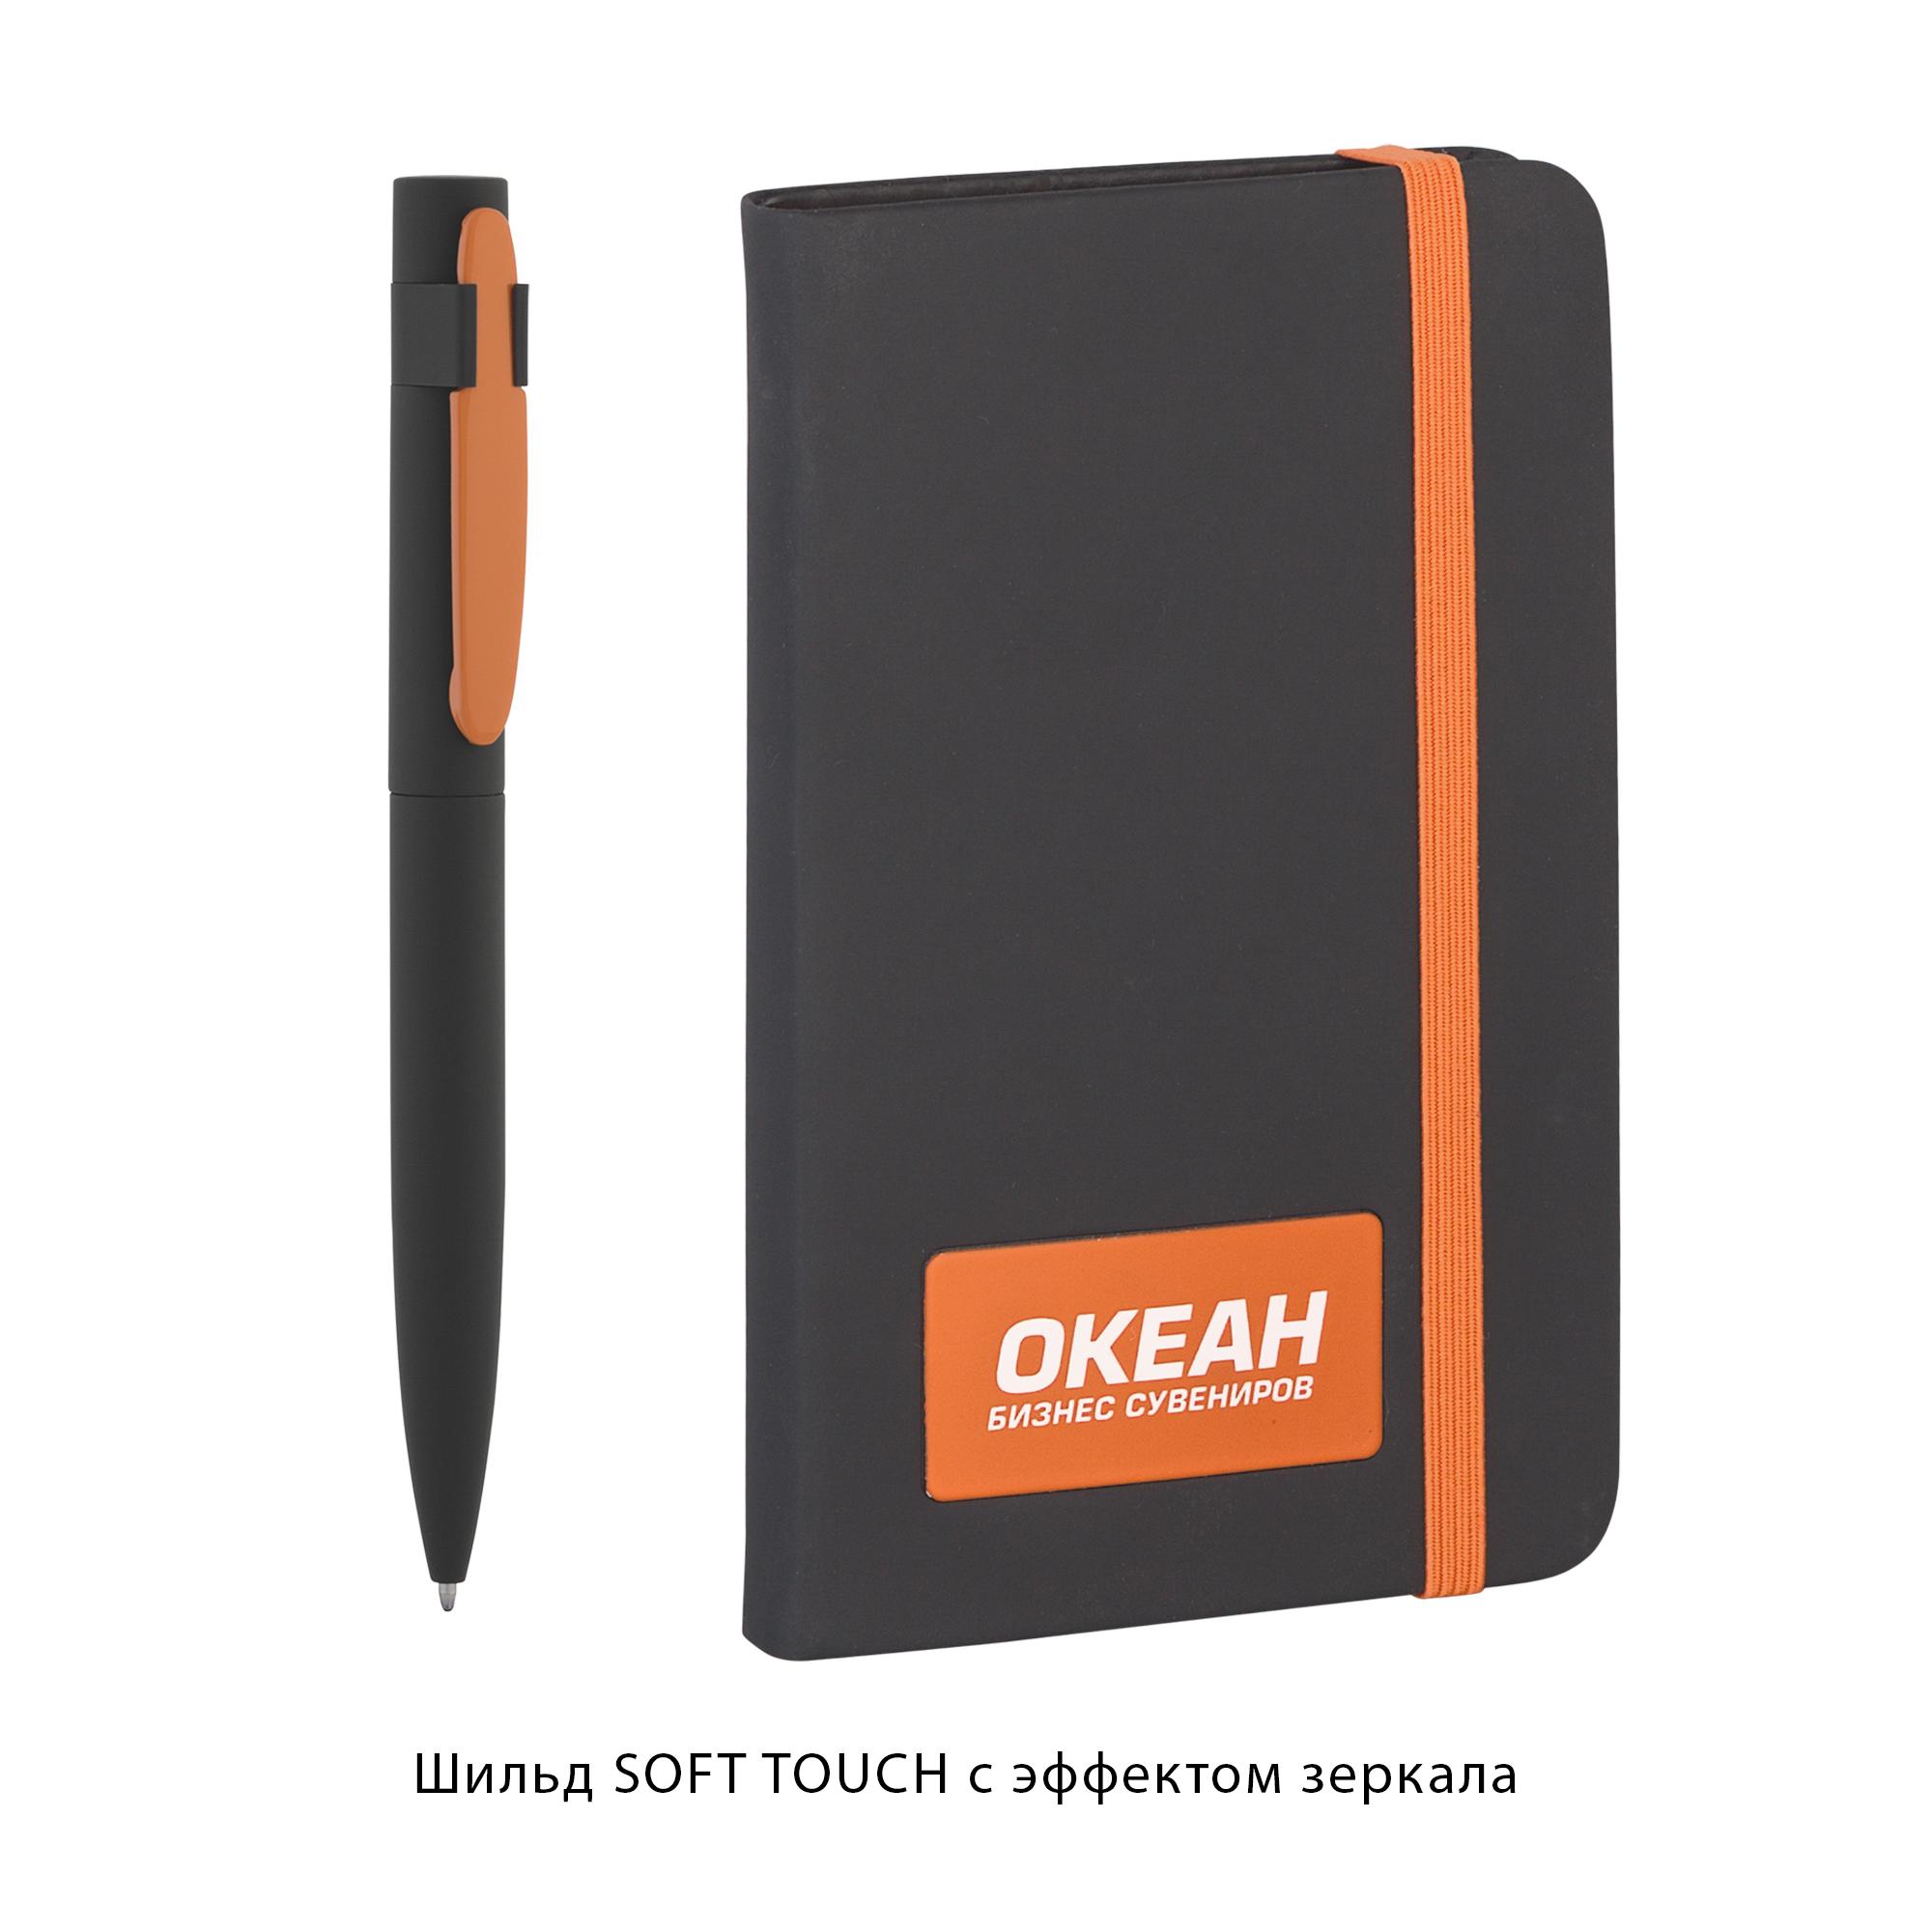 Набор подарочный "Таранто", покрытие soft touch#, цвет черный с оранжевым, фото 3